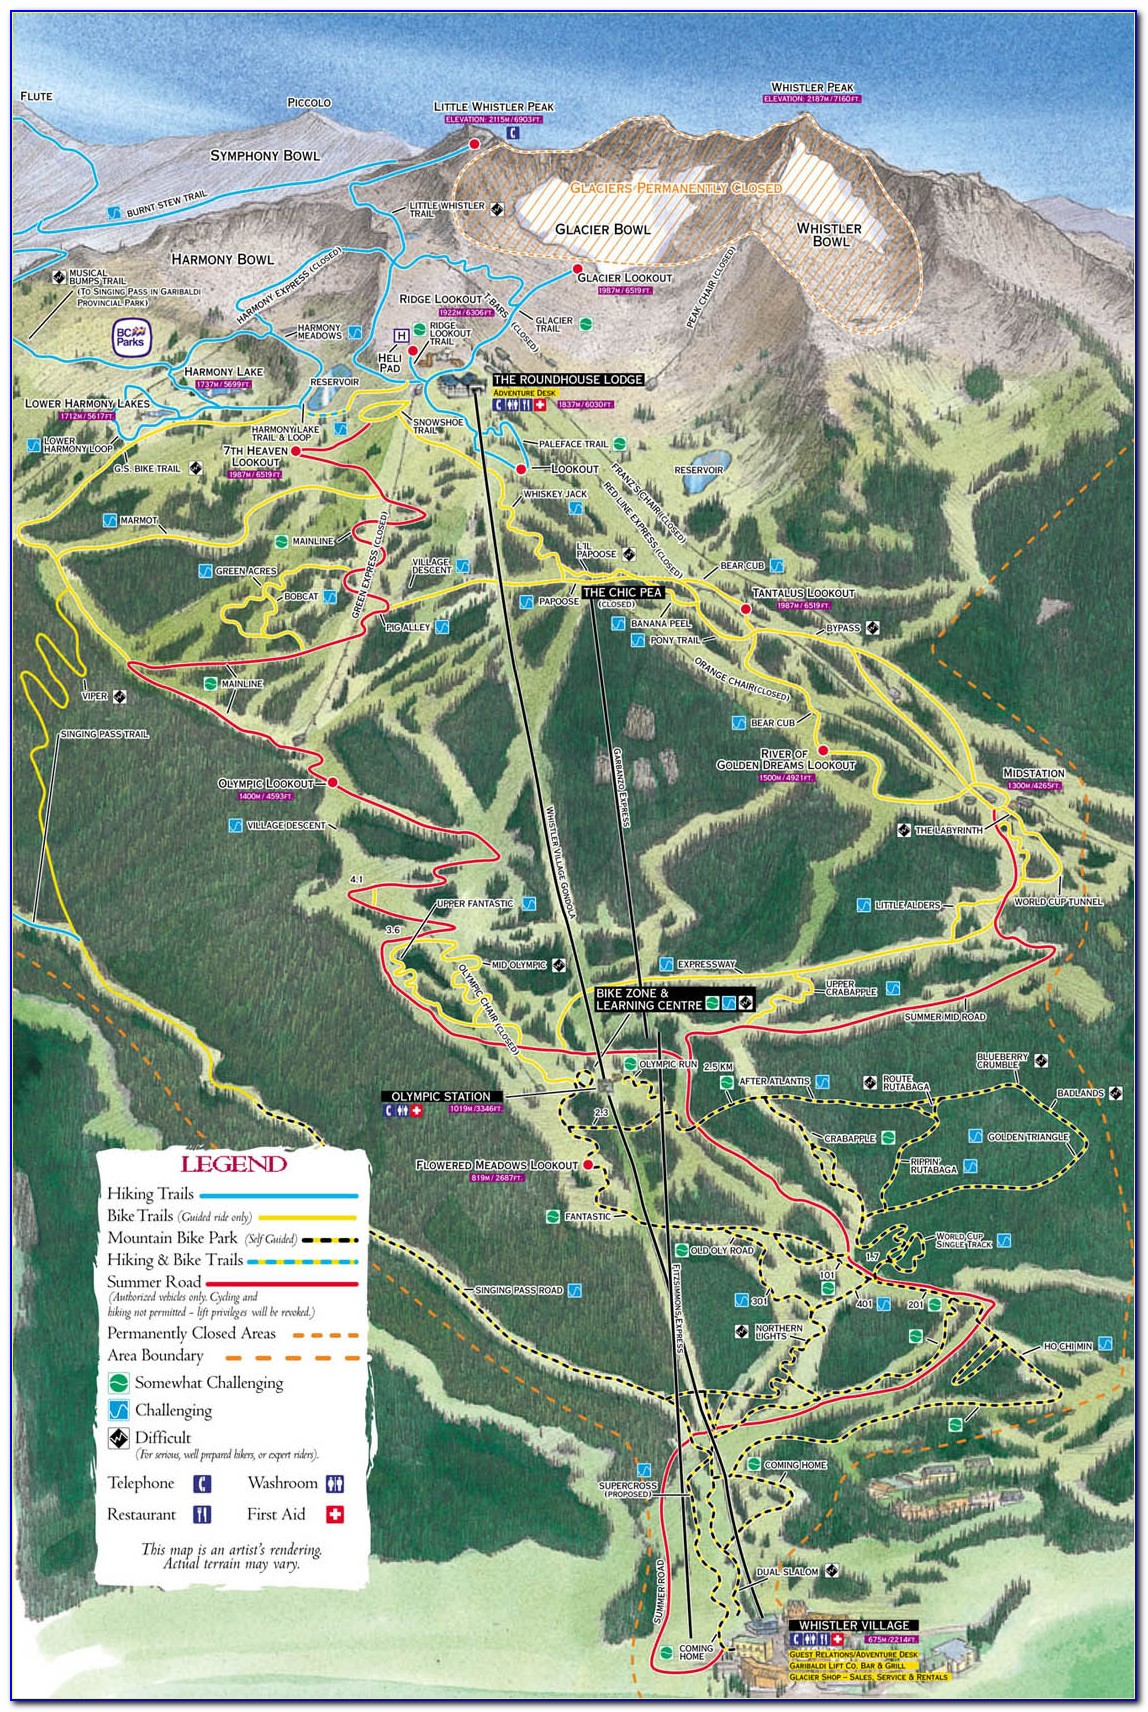 Whistler Bike Park Map